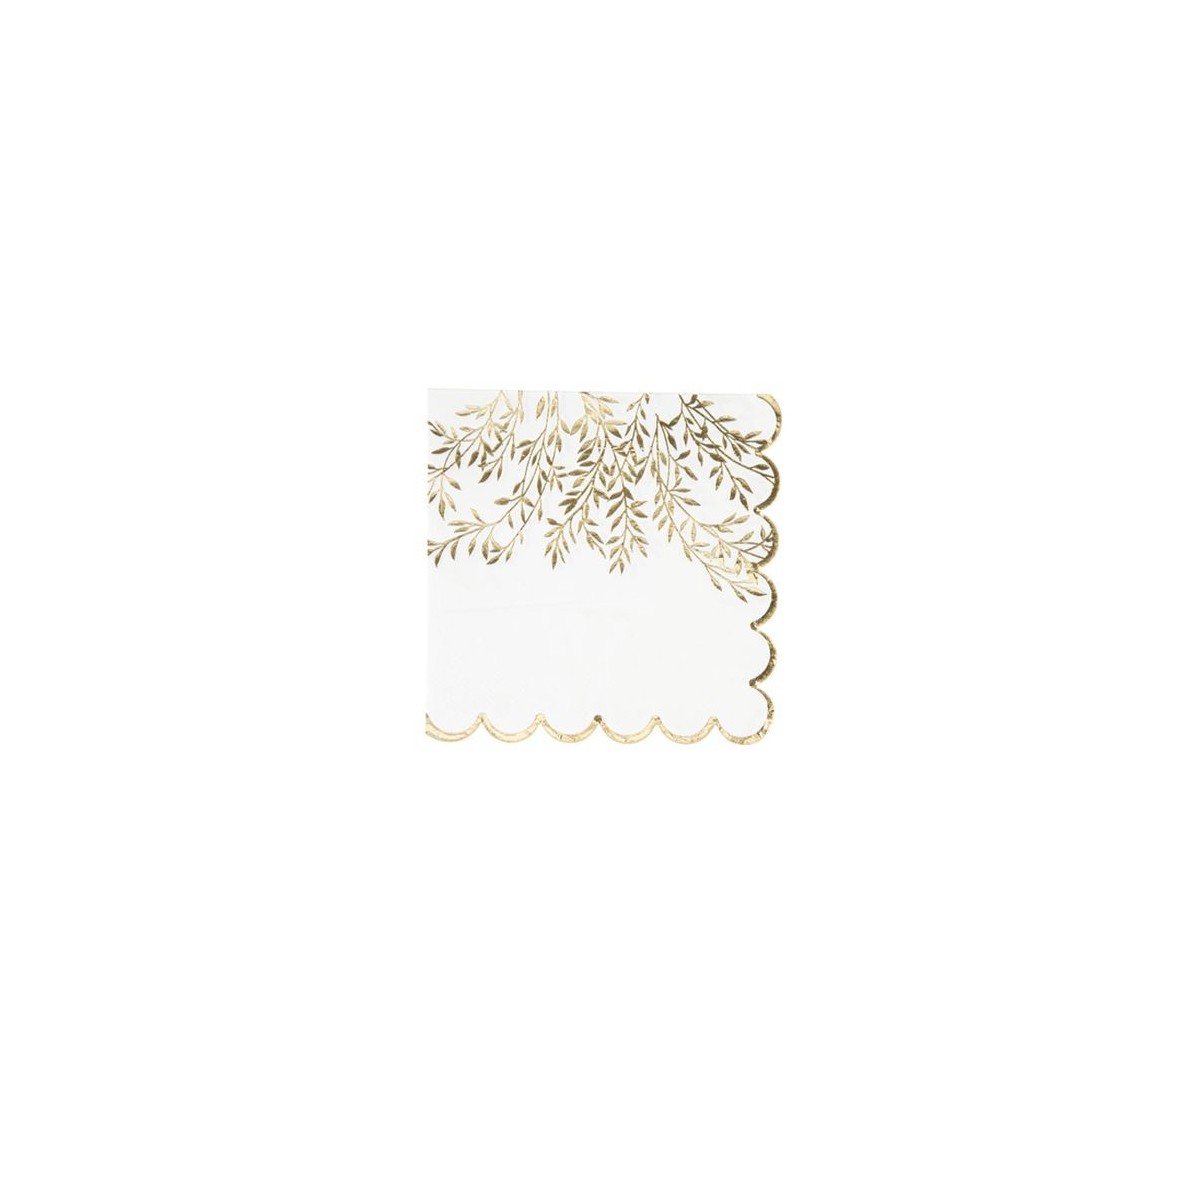 16 Serviettes blanches imprimées de brins dorés